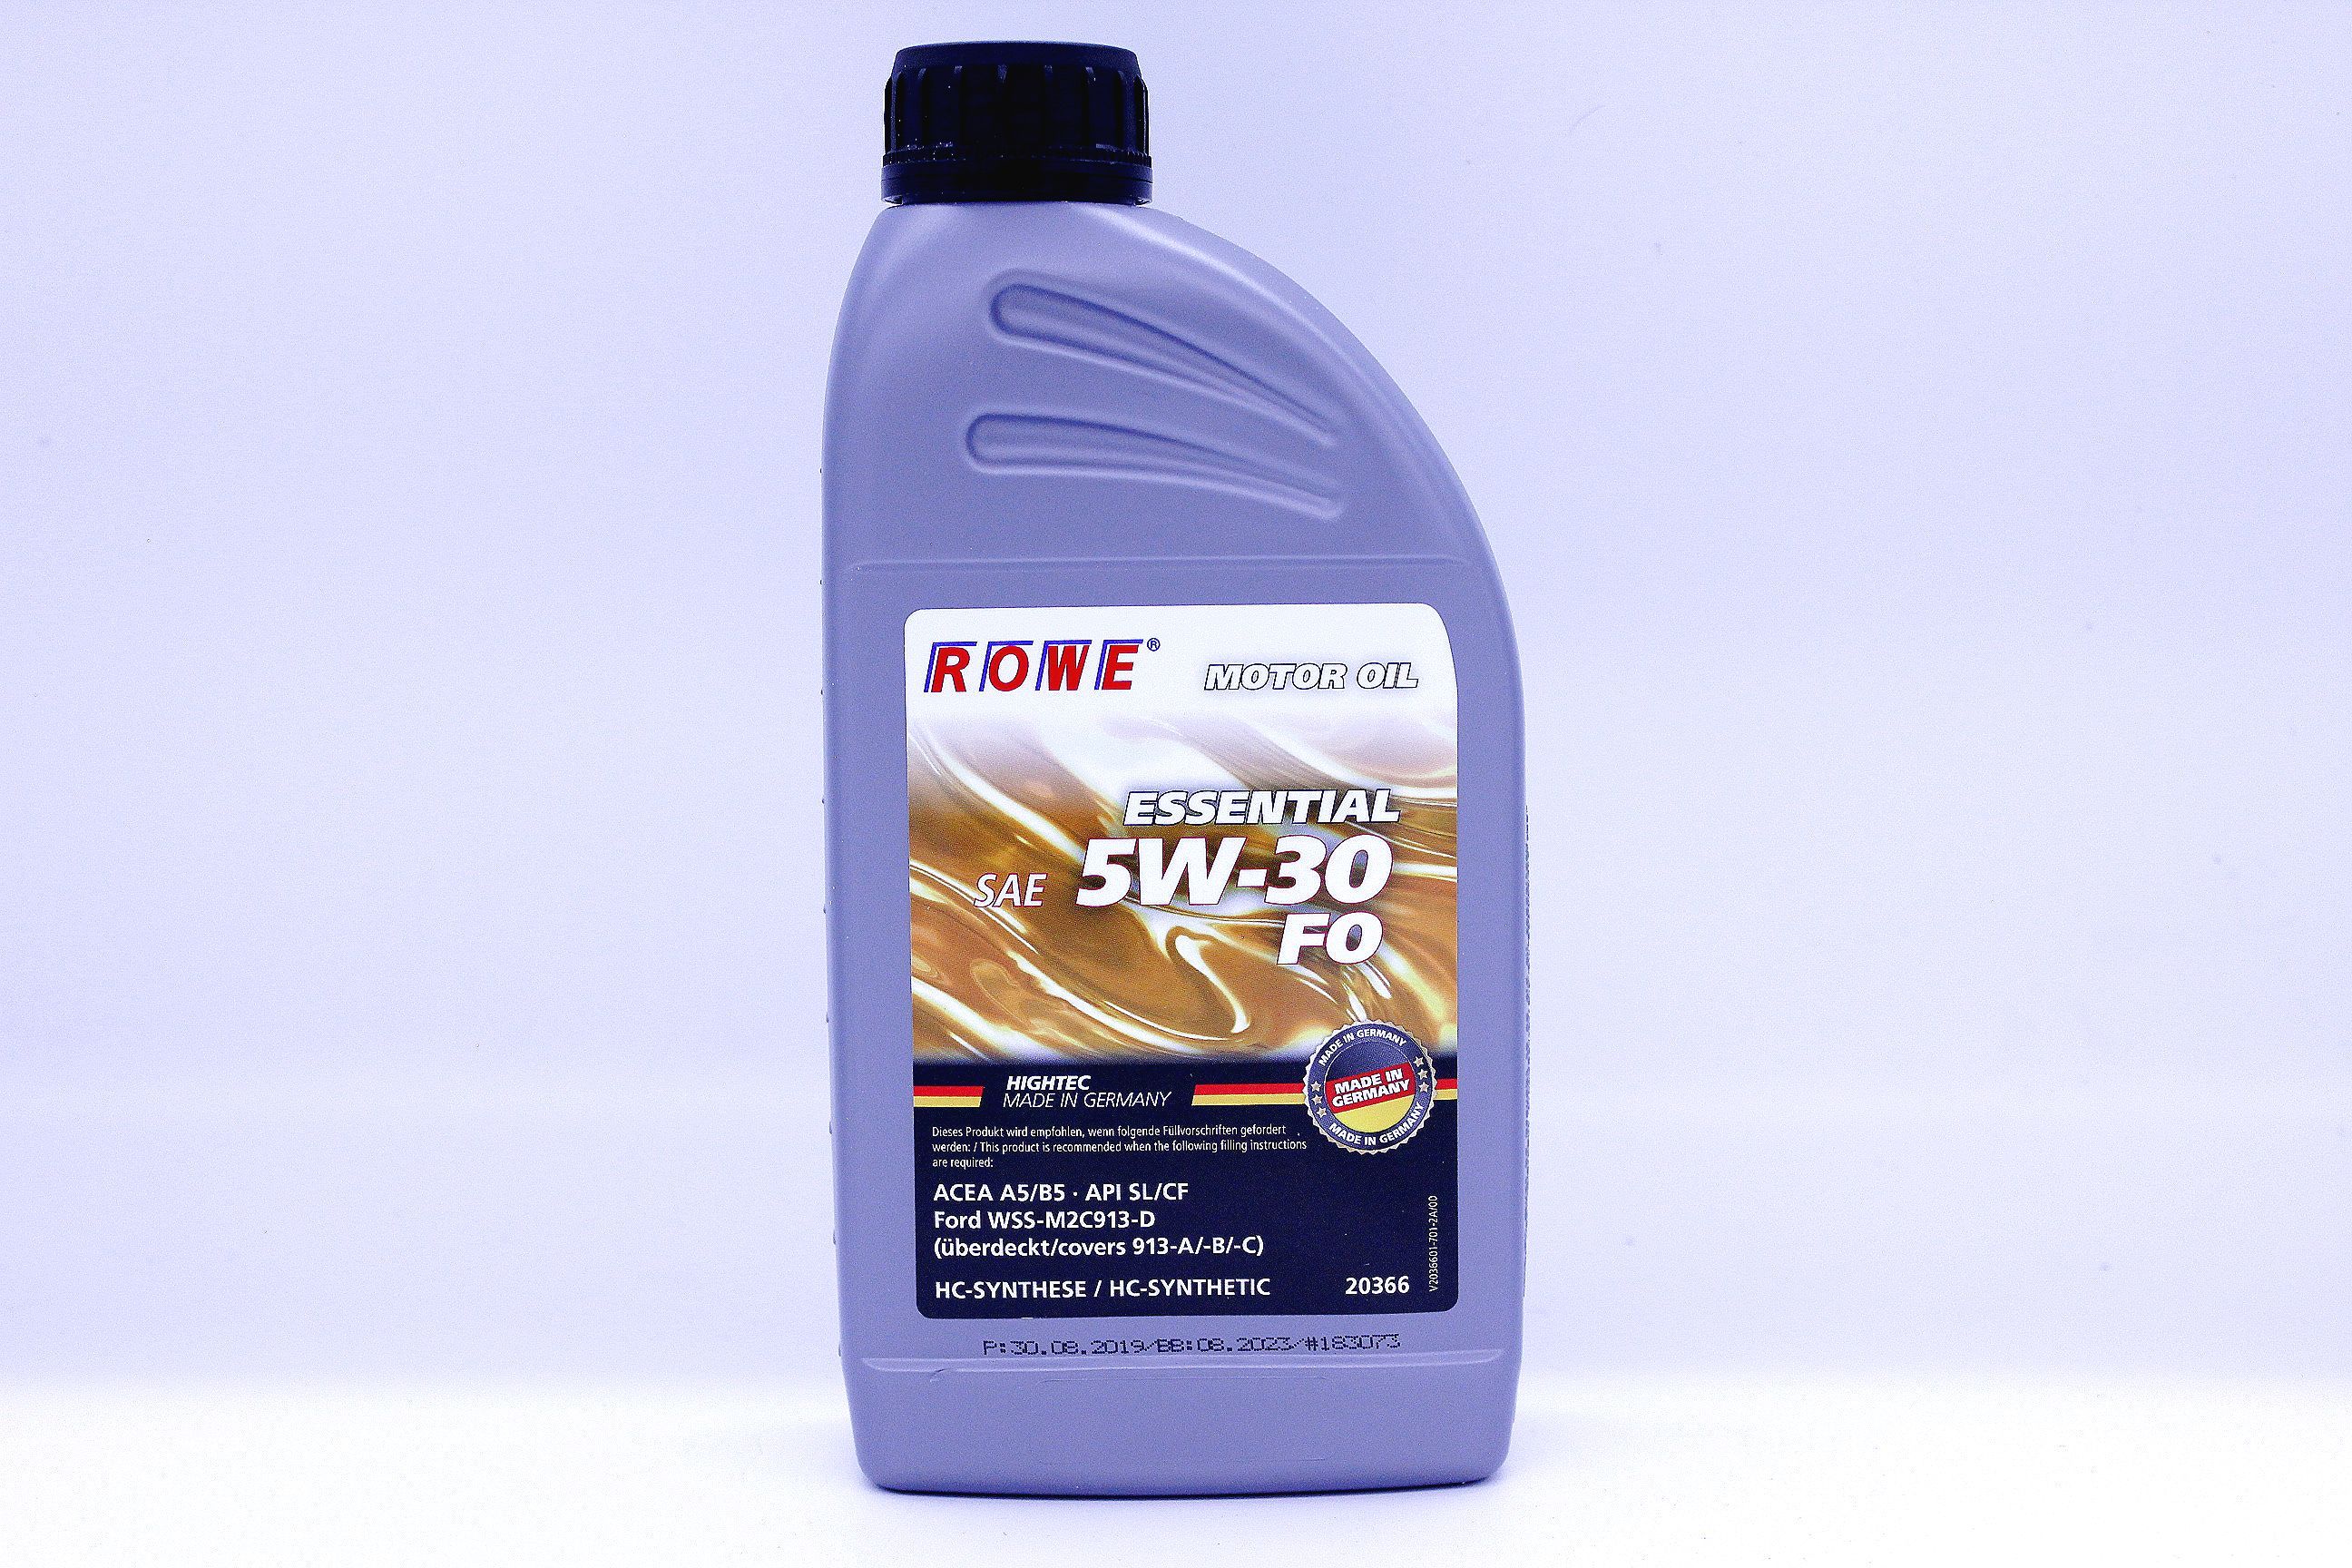 Моторное масло rowe 5w 30. Rowe Essential SAE 5w-30 Fo. Масло Rowe Essential 5w30. Rowe Essential SAE 5w-30 Fo модель 20366. Rowe 5w30 SN/CF Asia.